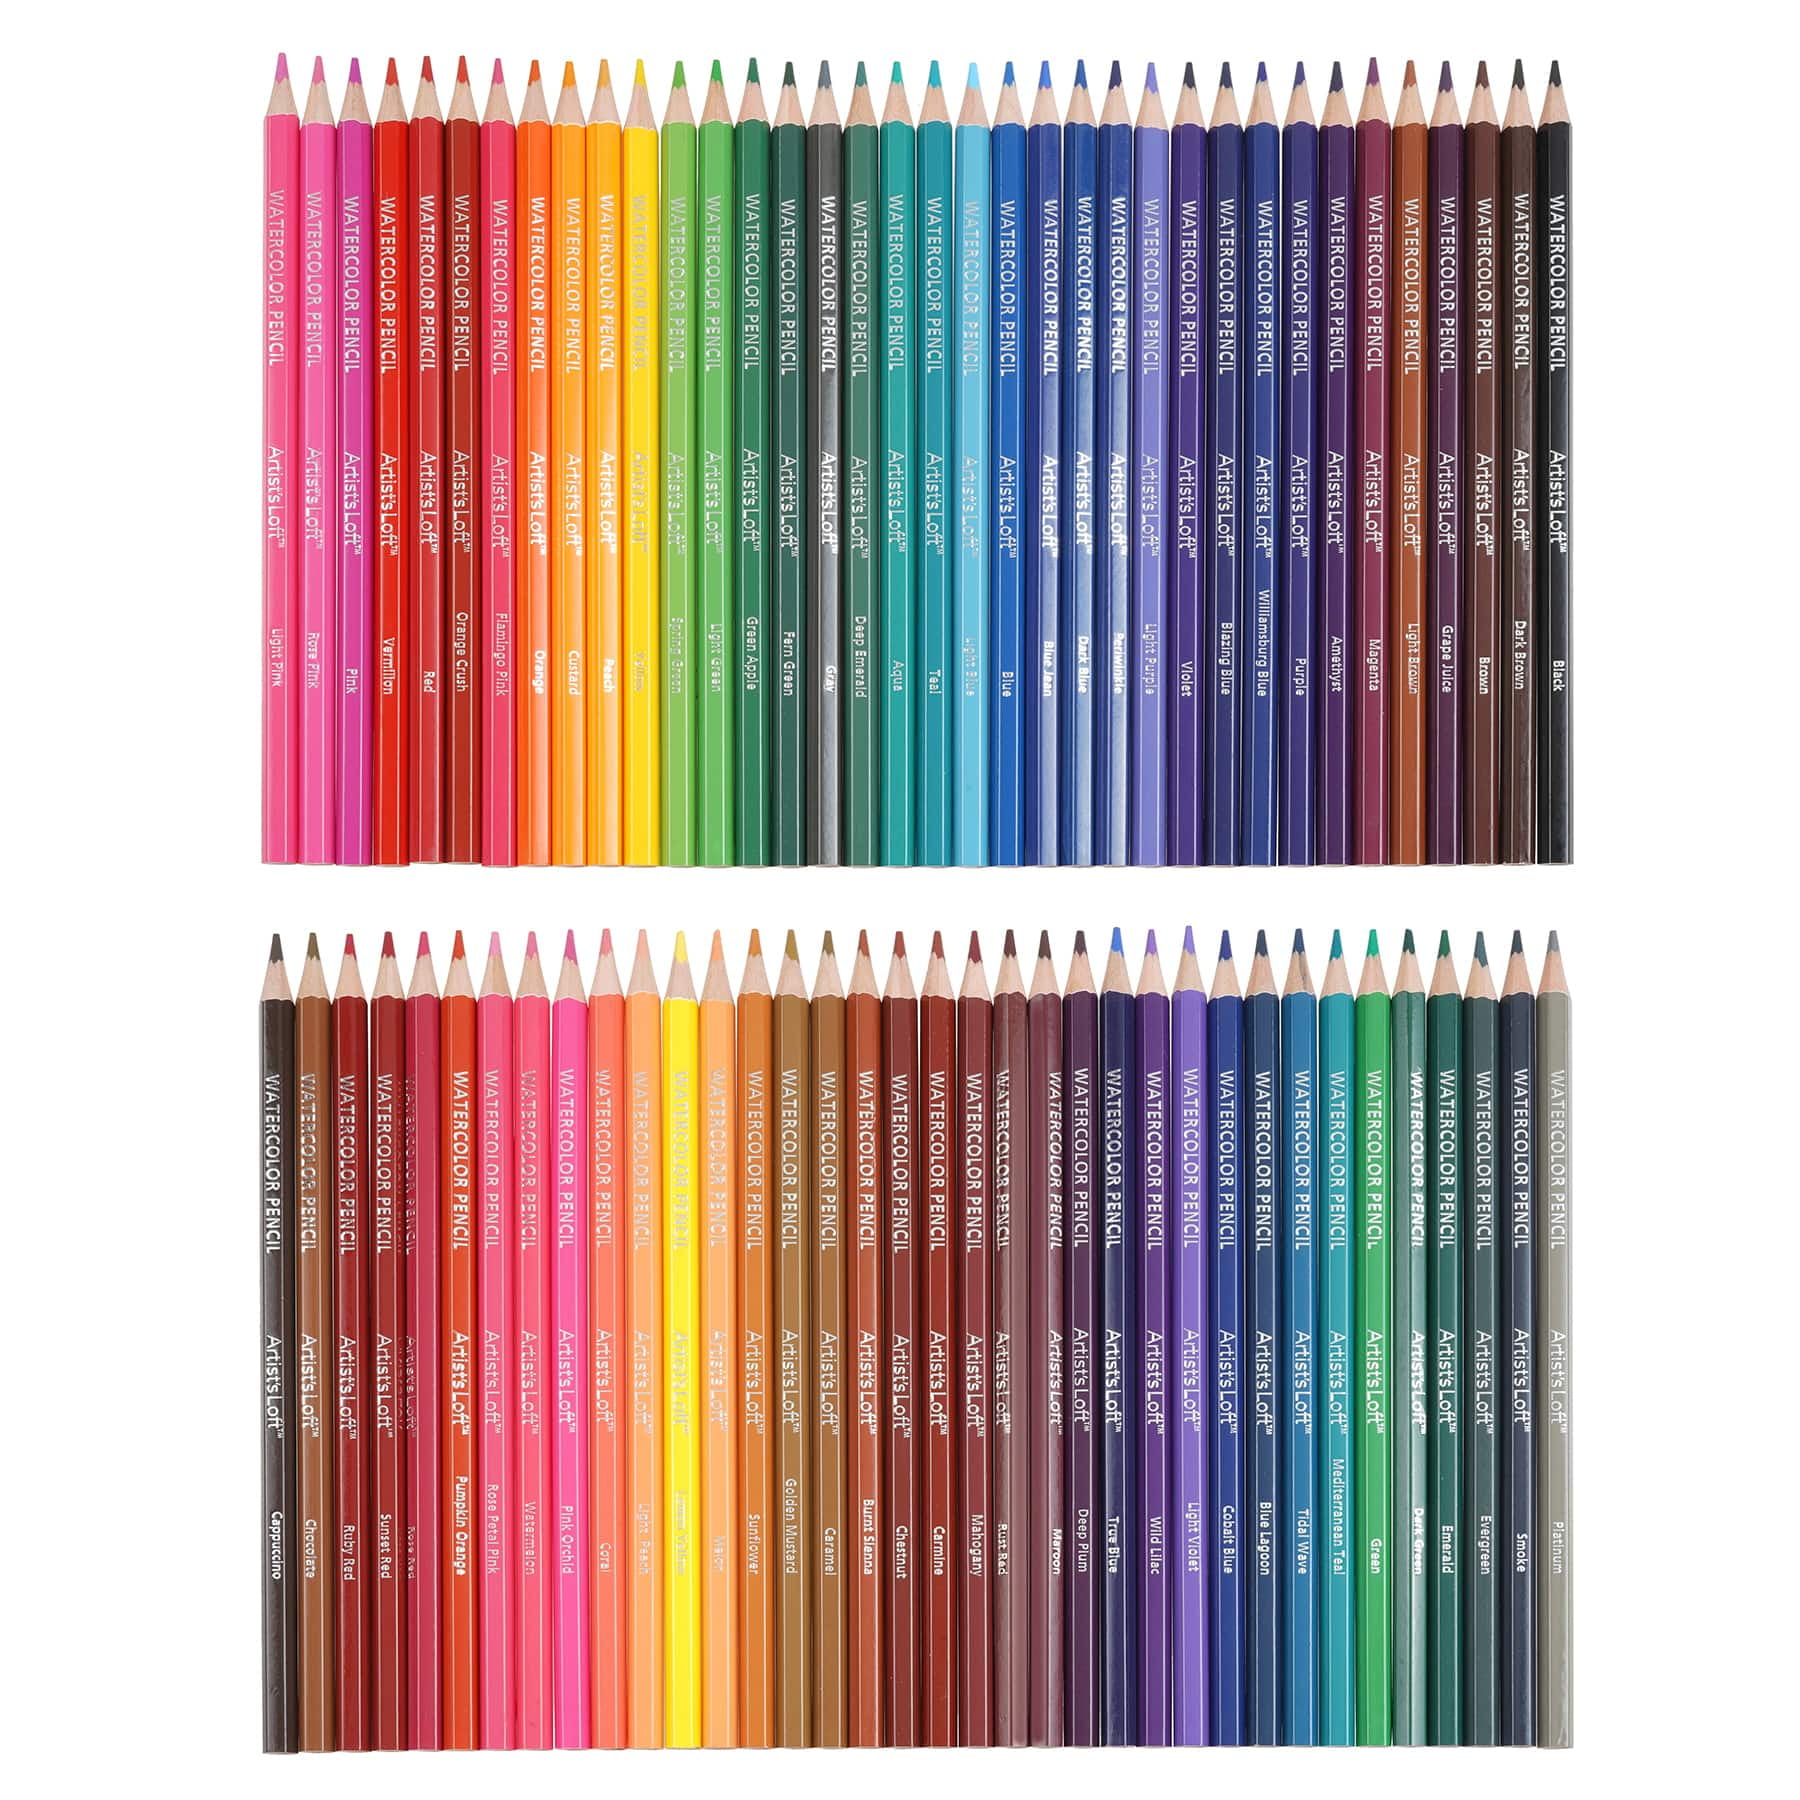 Colorarty 72 Vivid Watercolor Pencil Set (Luxury Cedar Wood